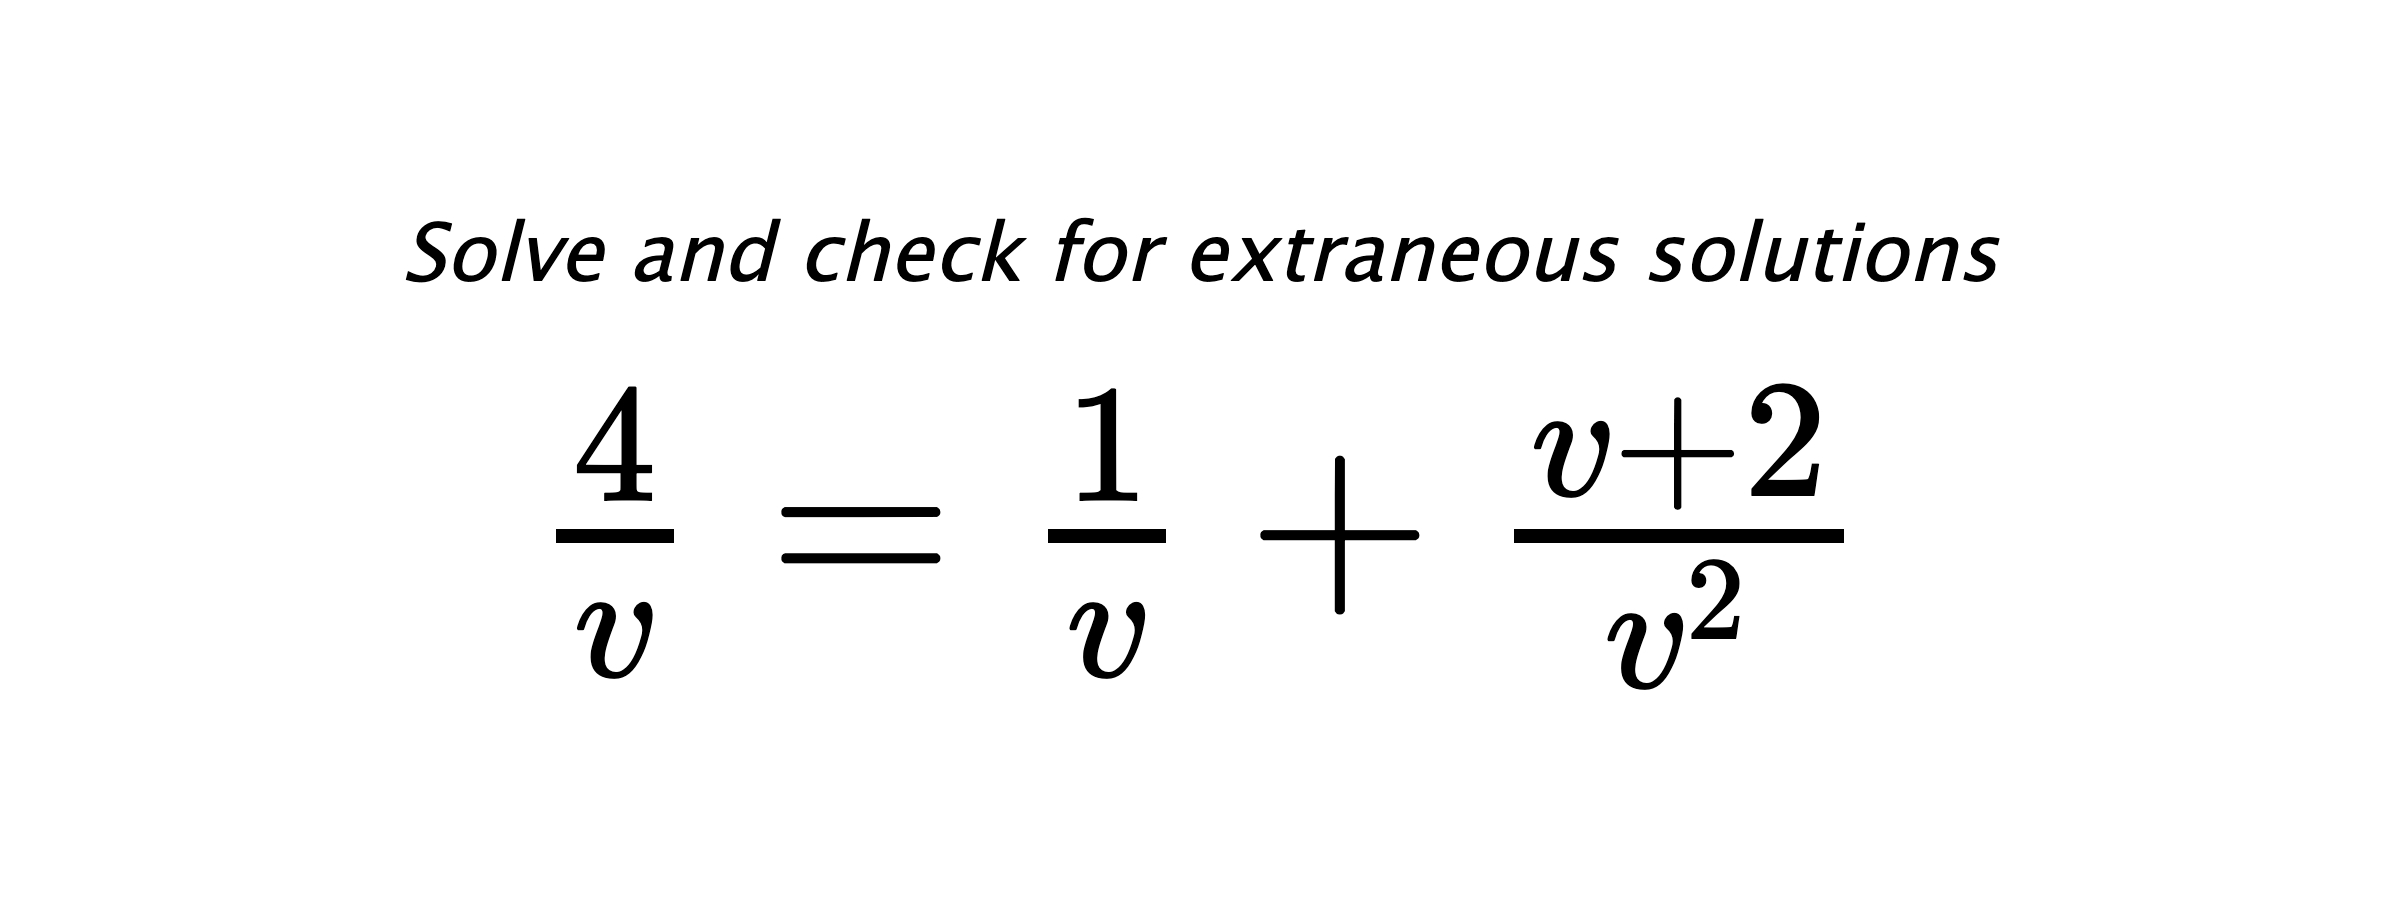 Solve and check for extraneous solutions $ \frac{4}{v}=\frac{1}{v}+\frac{v+2}{v^2} $